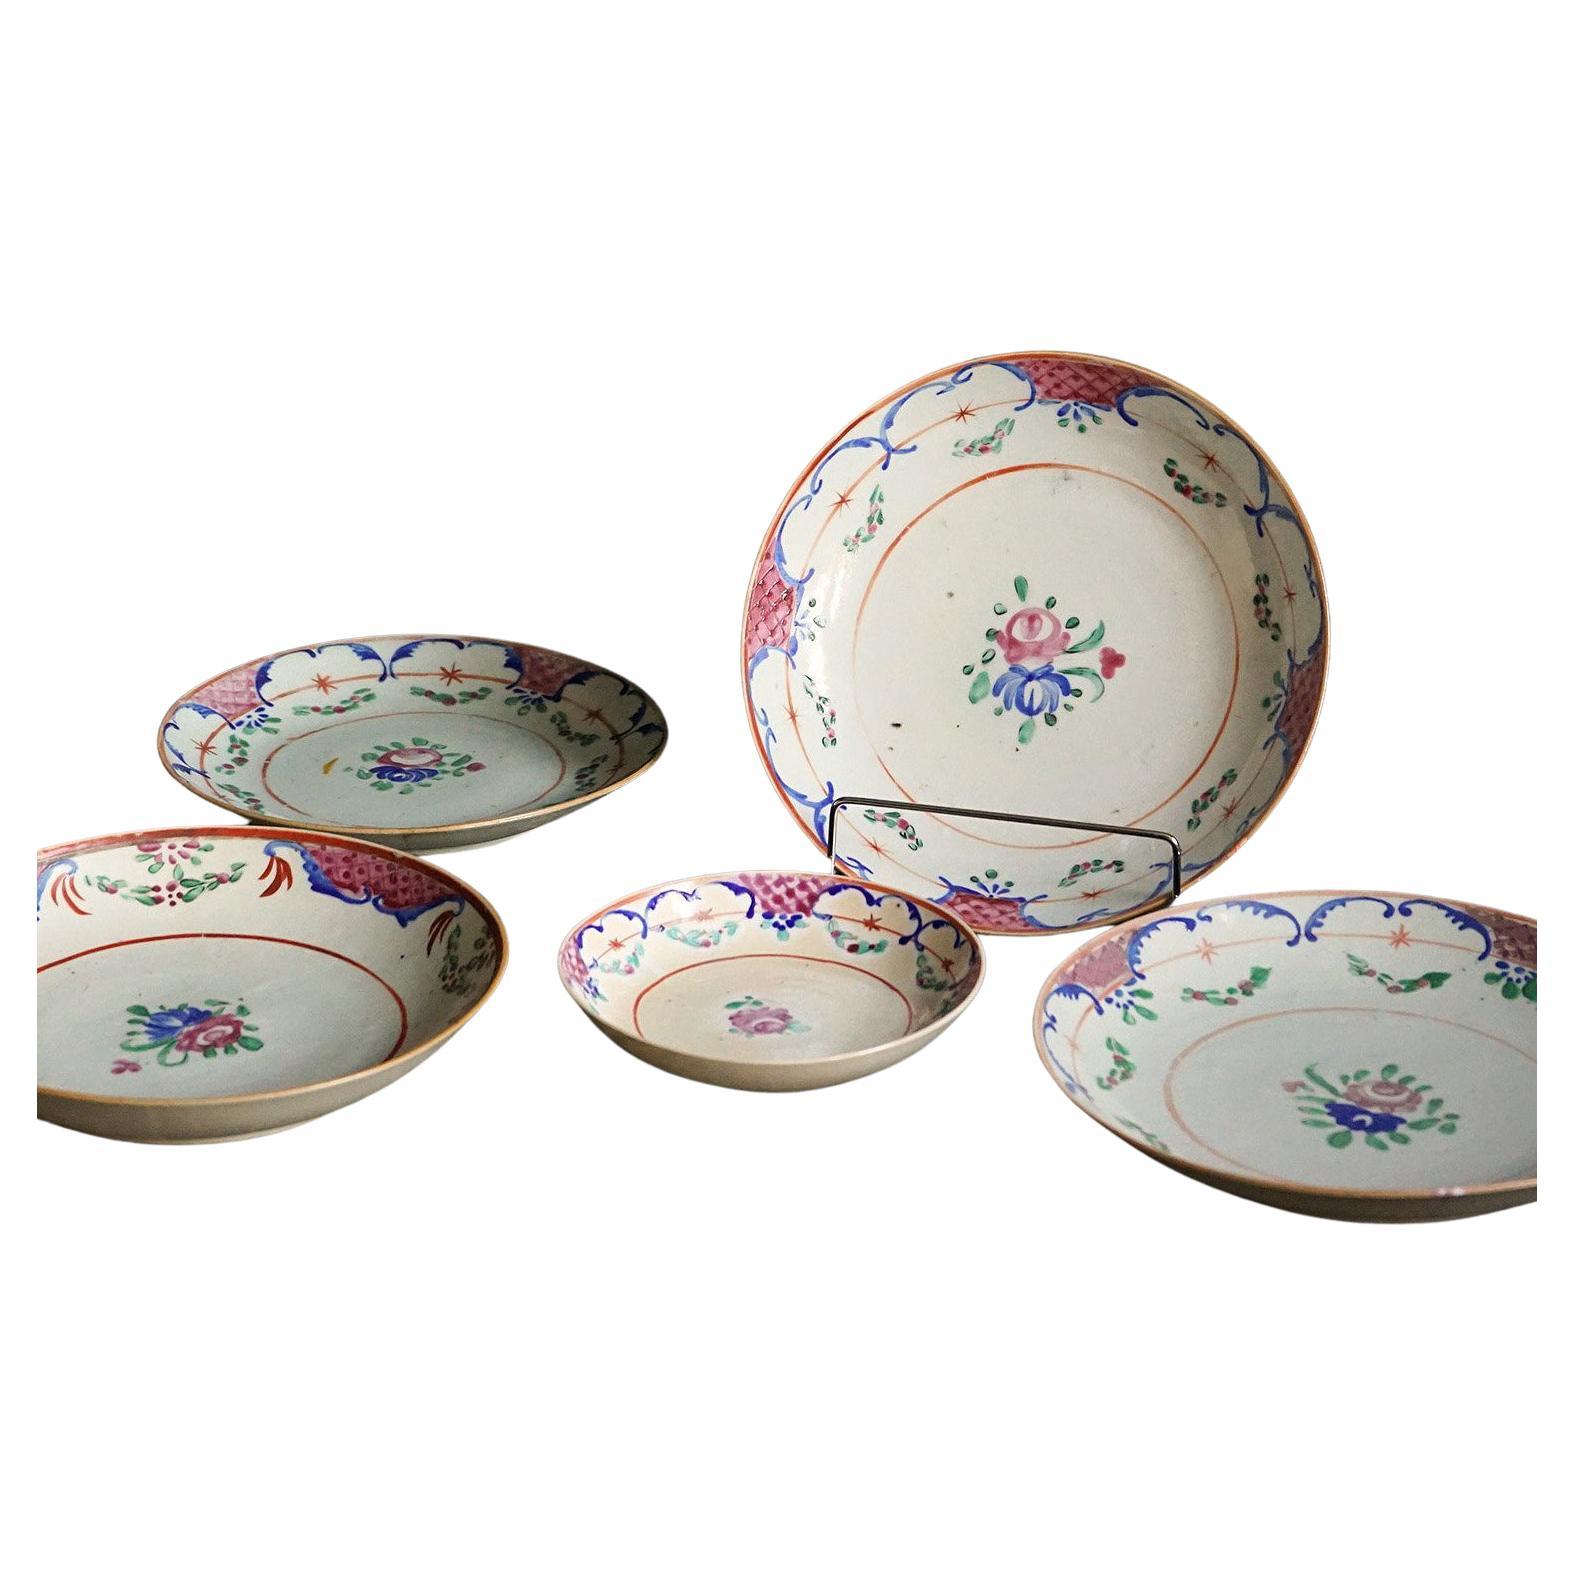 Collection d'anciens bols en porcelaine d'exportation chinoise, début du XIXe siècle